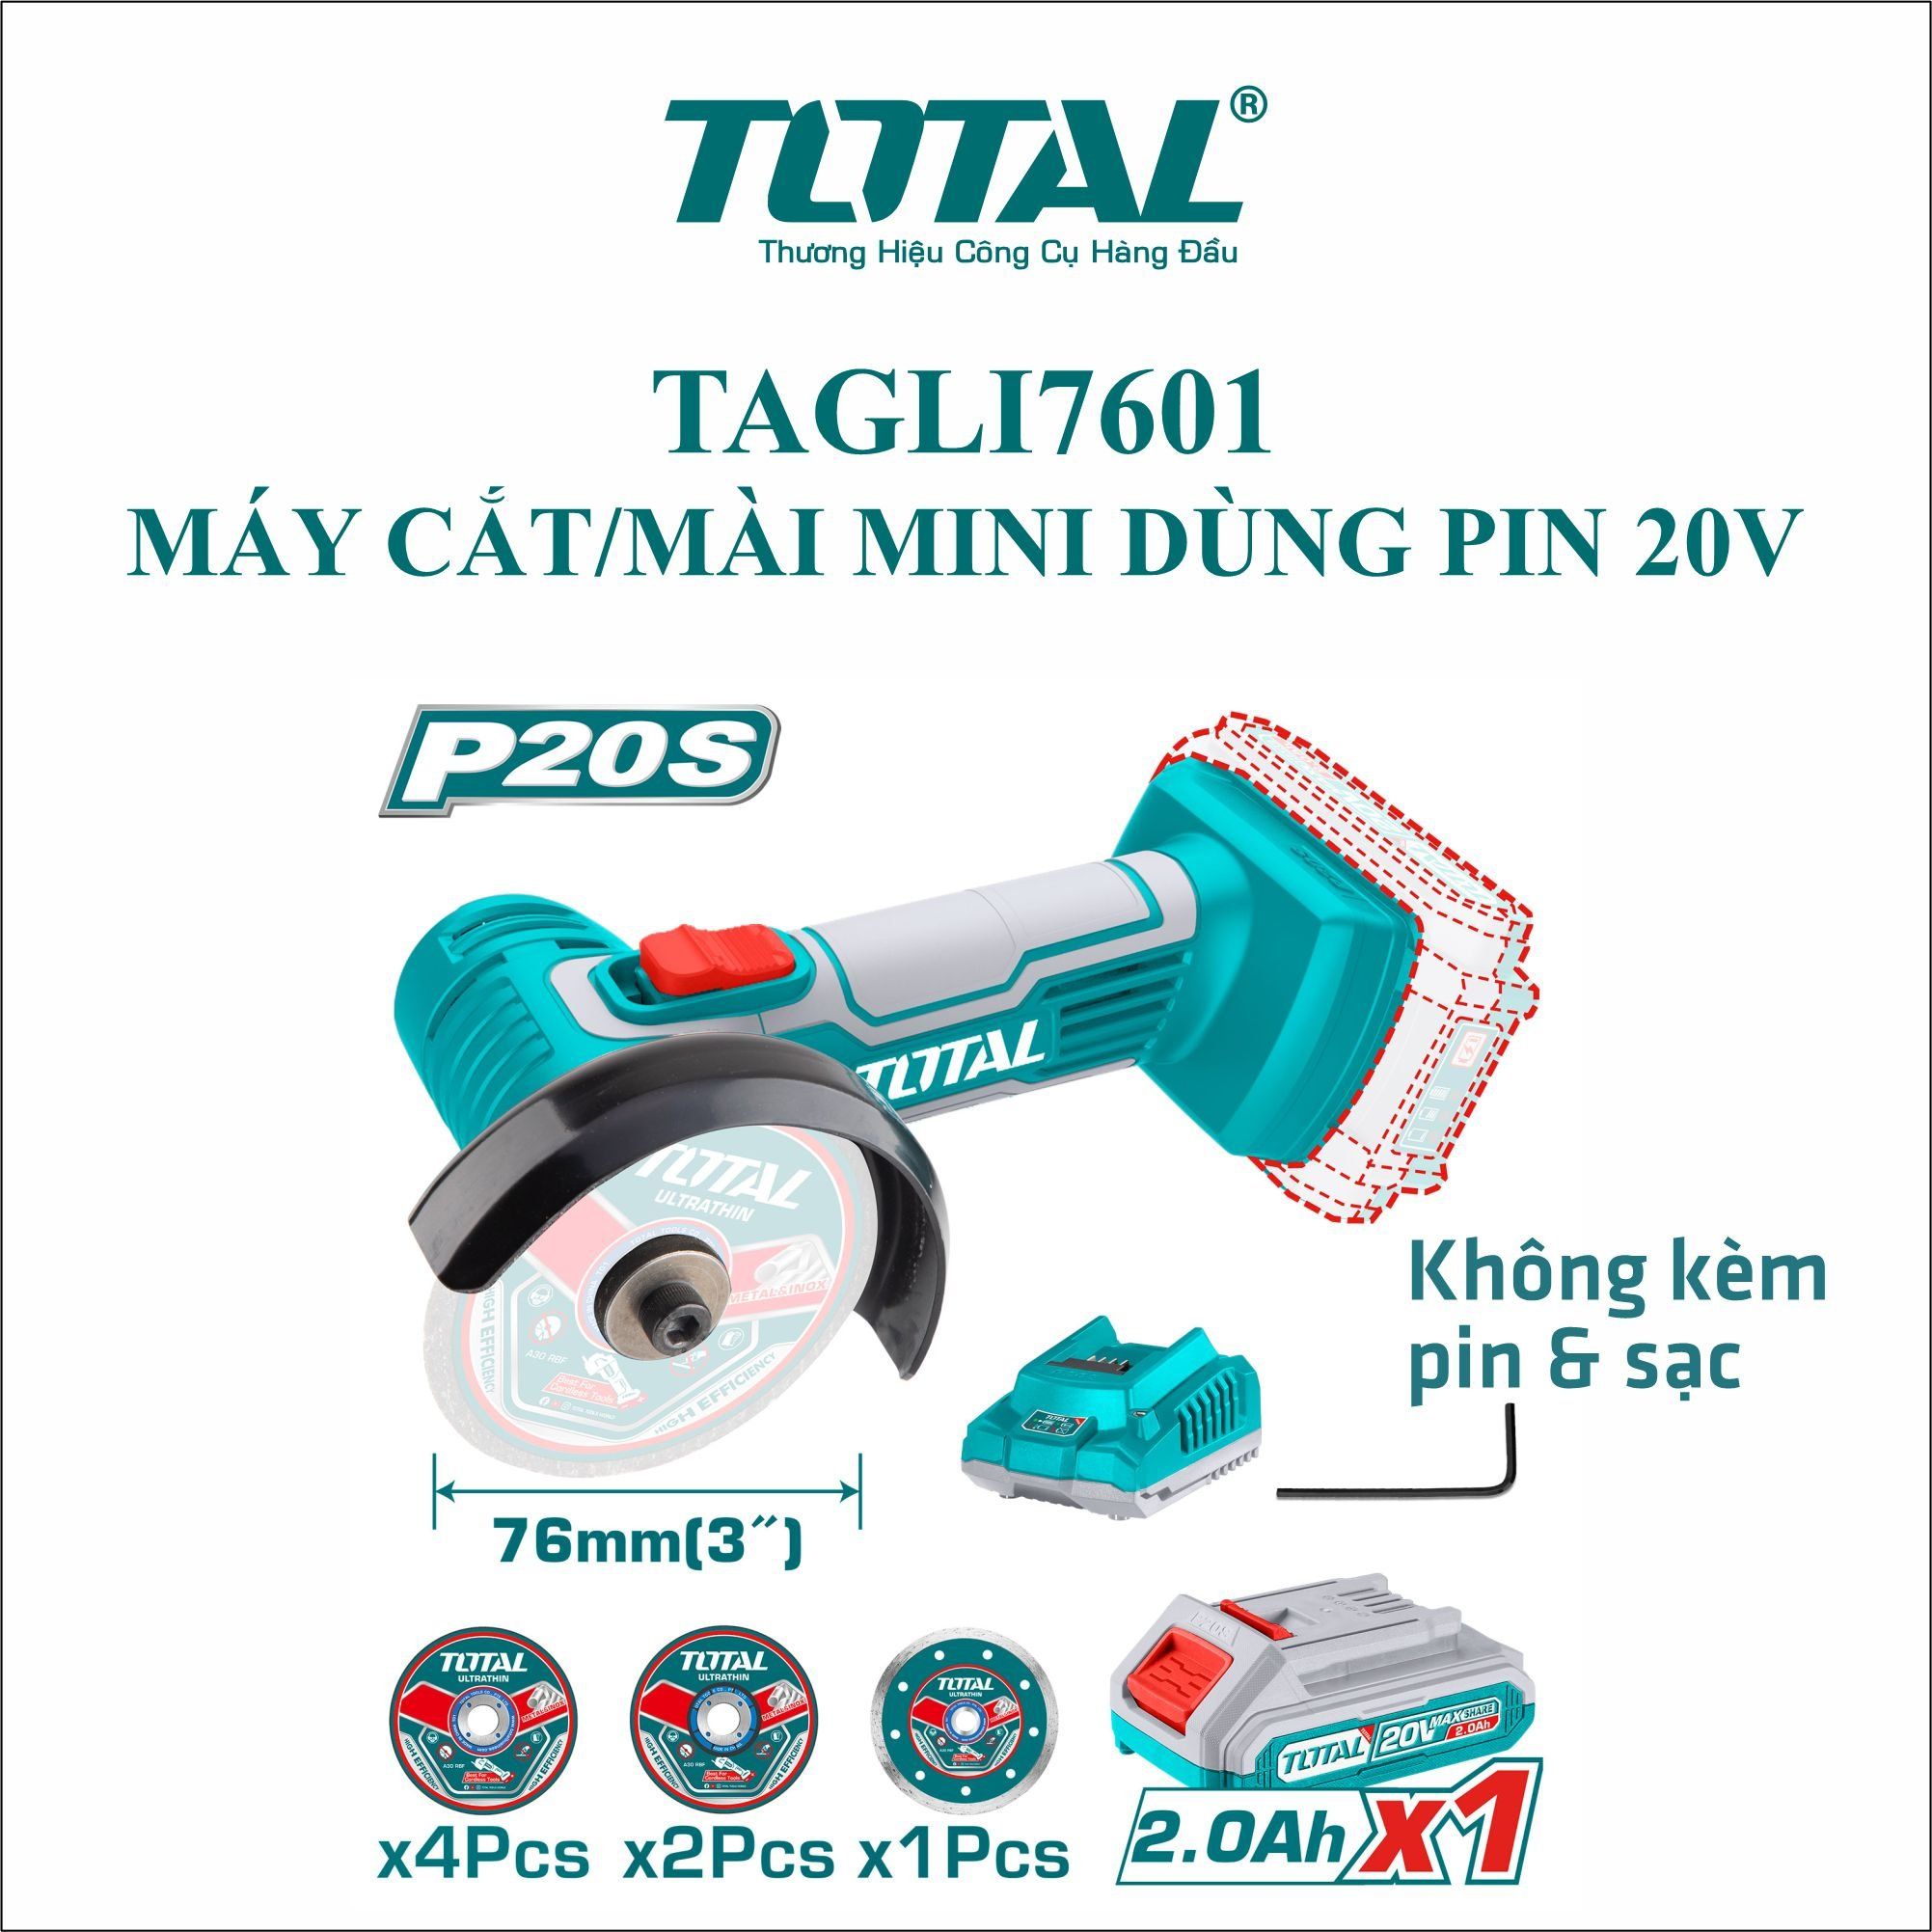  Máy cắt và mài mini dùng pin 20V Total TAGLI7601 (Solo) 